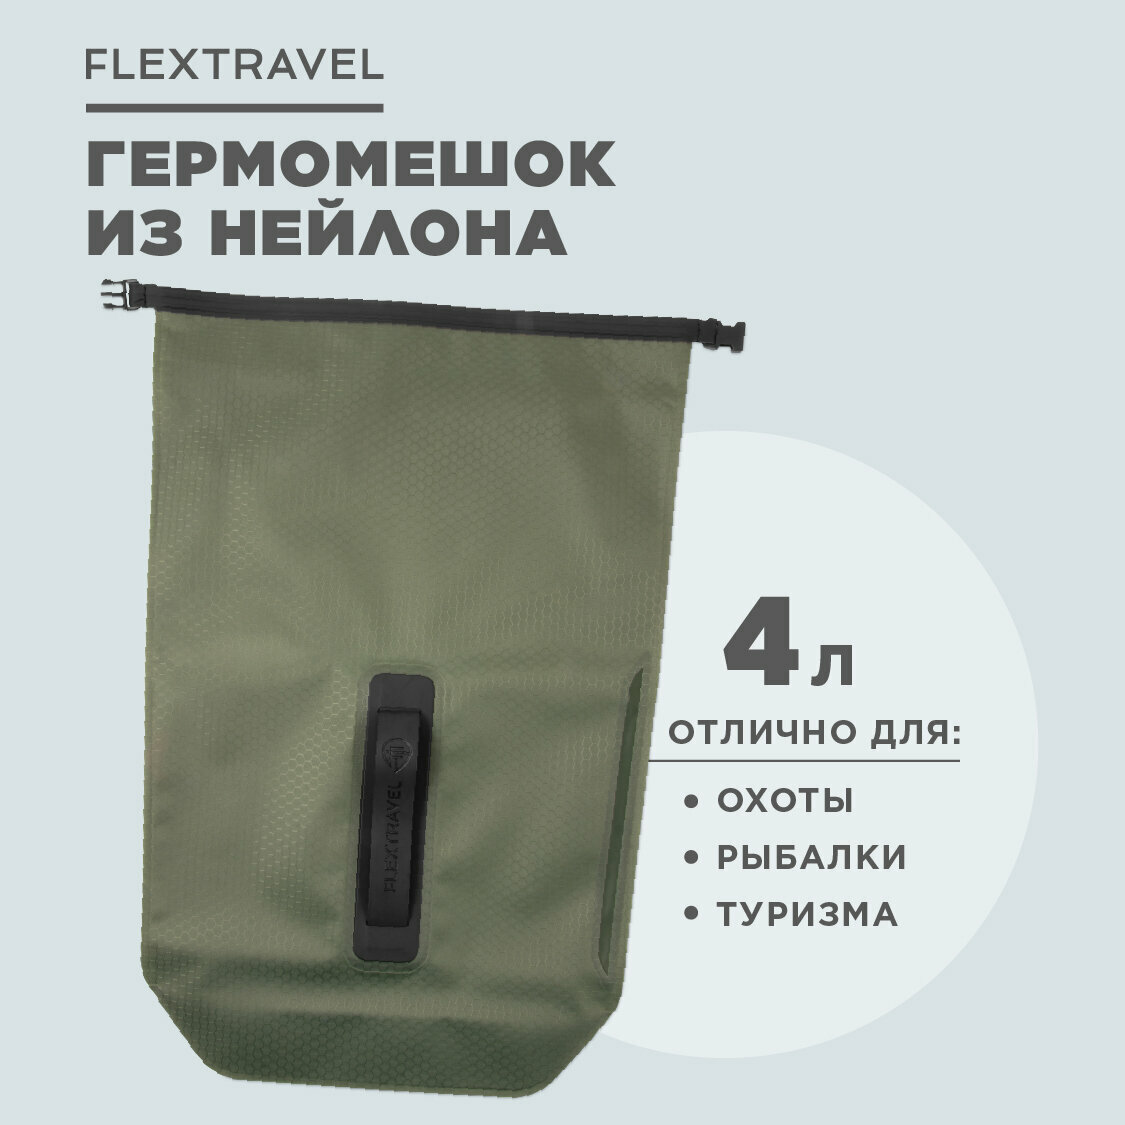 Универсальный гермомешочек FlexTravel, водонепроницаемый мешок на 4 литра, зеленый